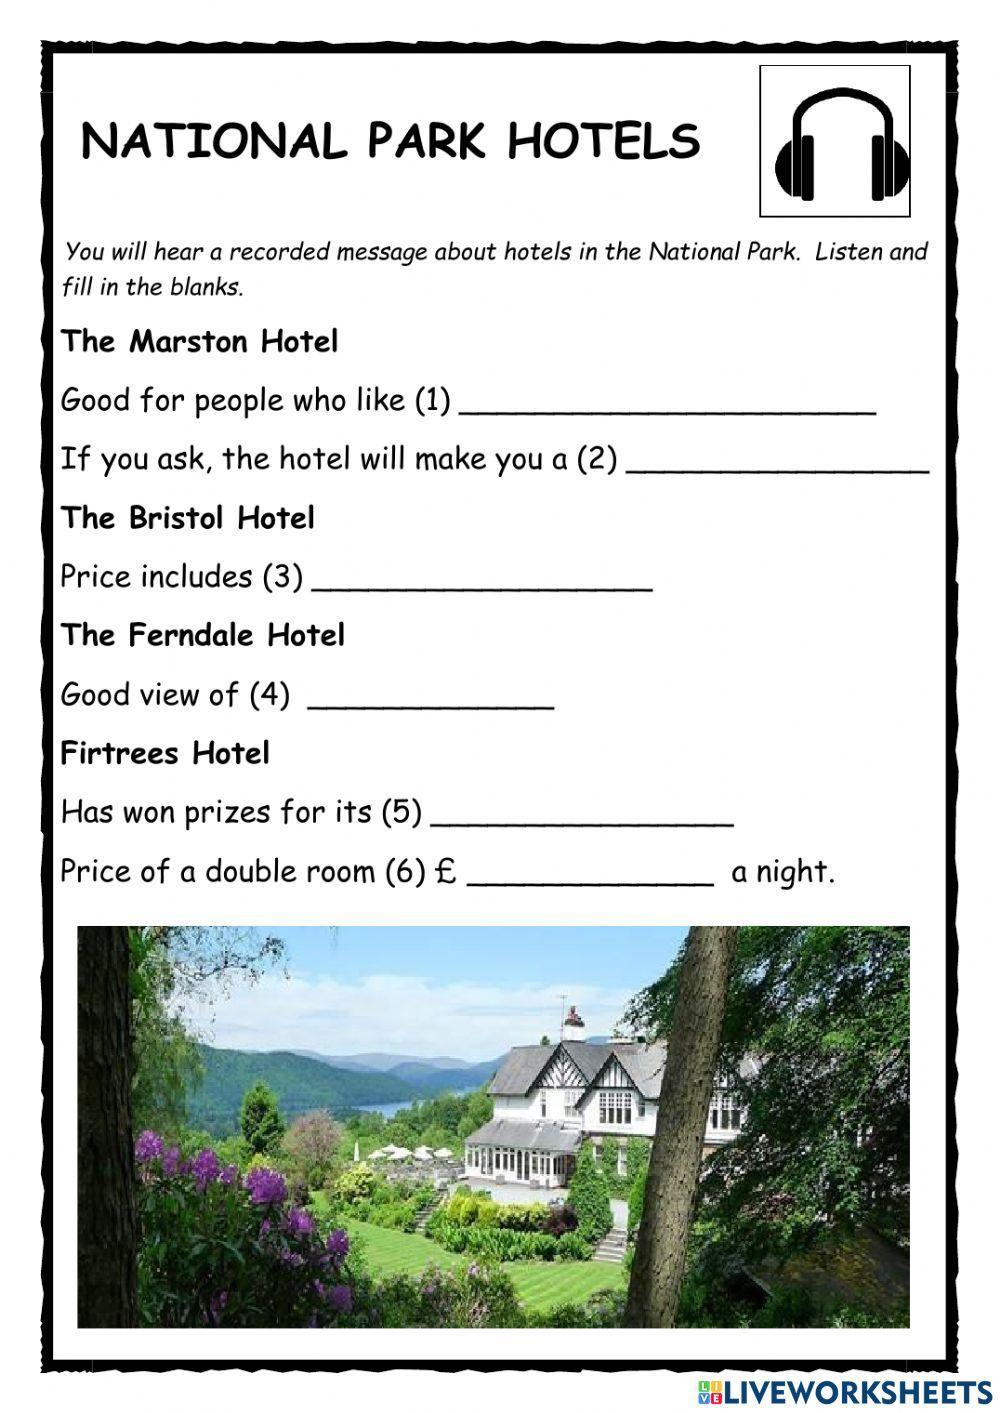 National Park Hotels